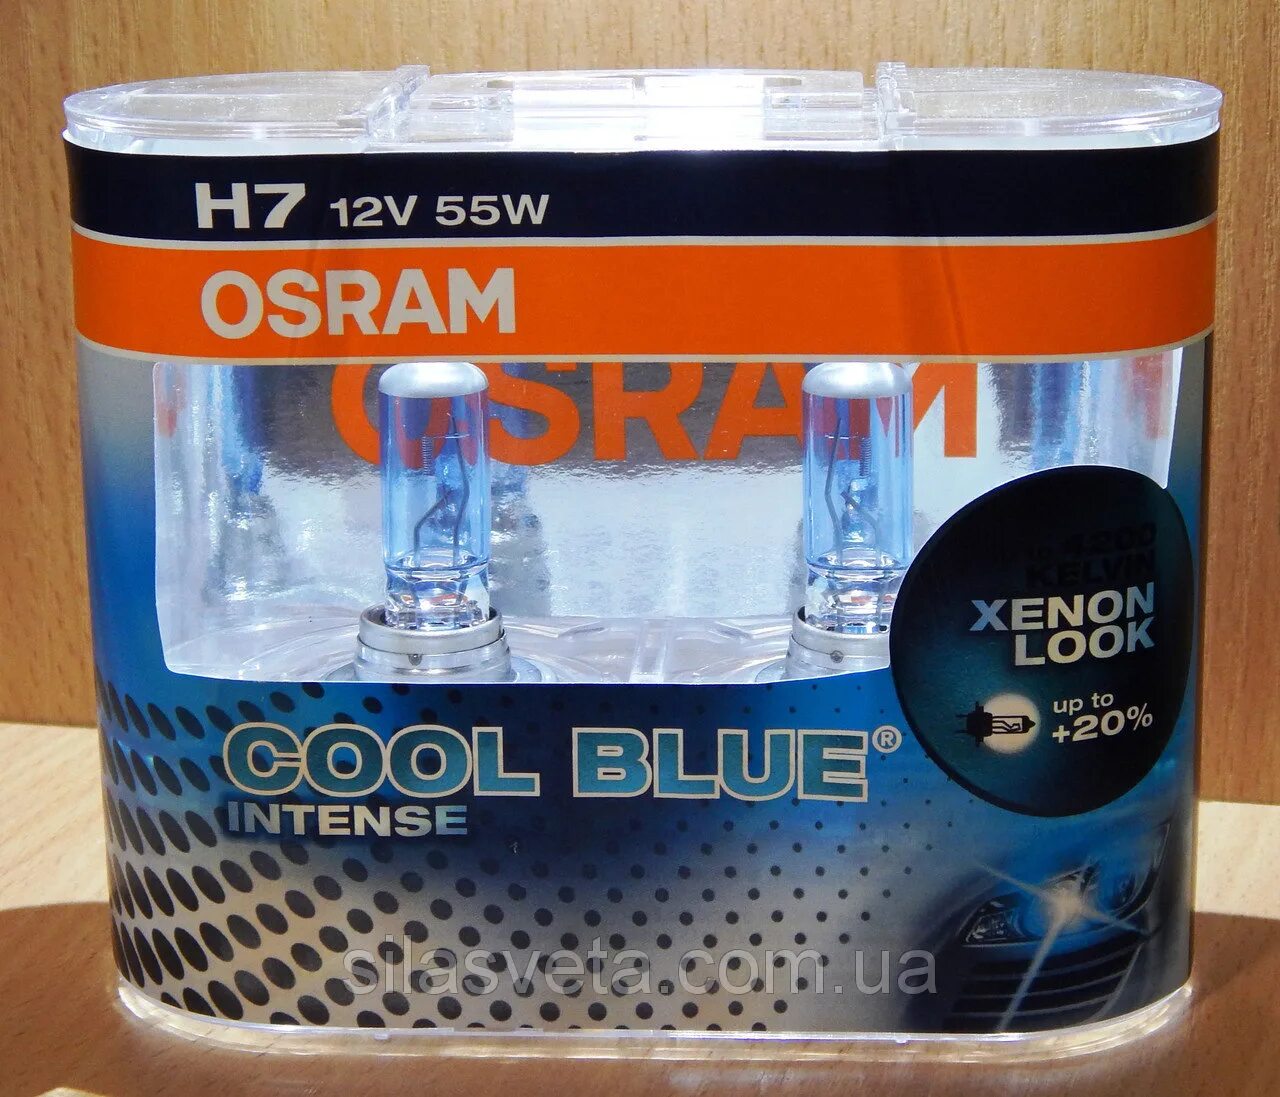 Osram h11 12v 55w. Осрам h7 белый свет. Лампы h7 Осрам кул Блю. "Osram""Coolblue h1. Лампочки Osram cool Blue intense h7.